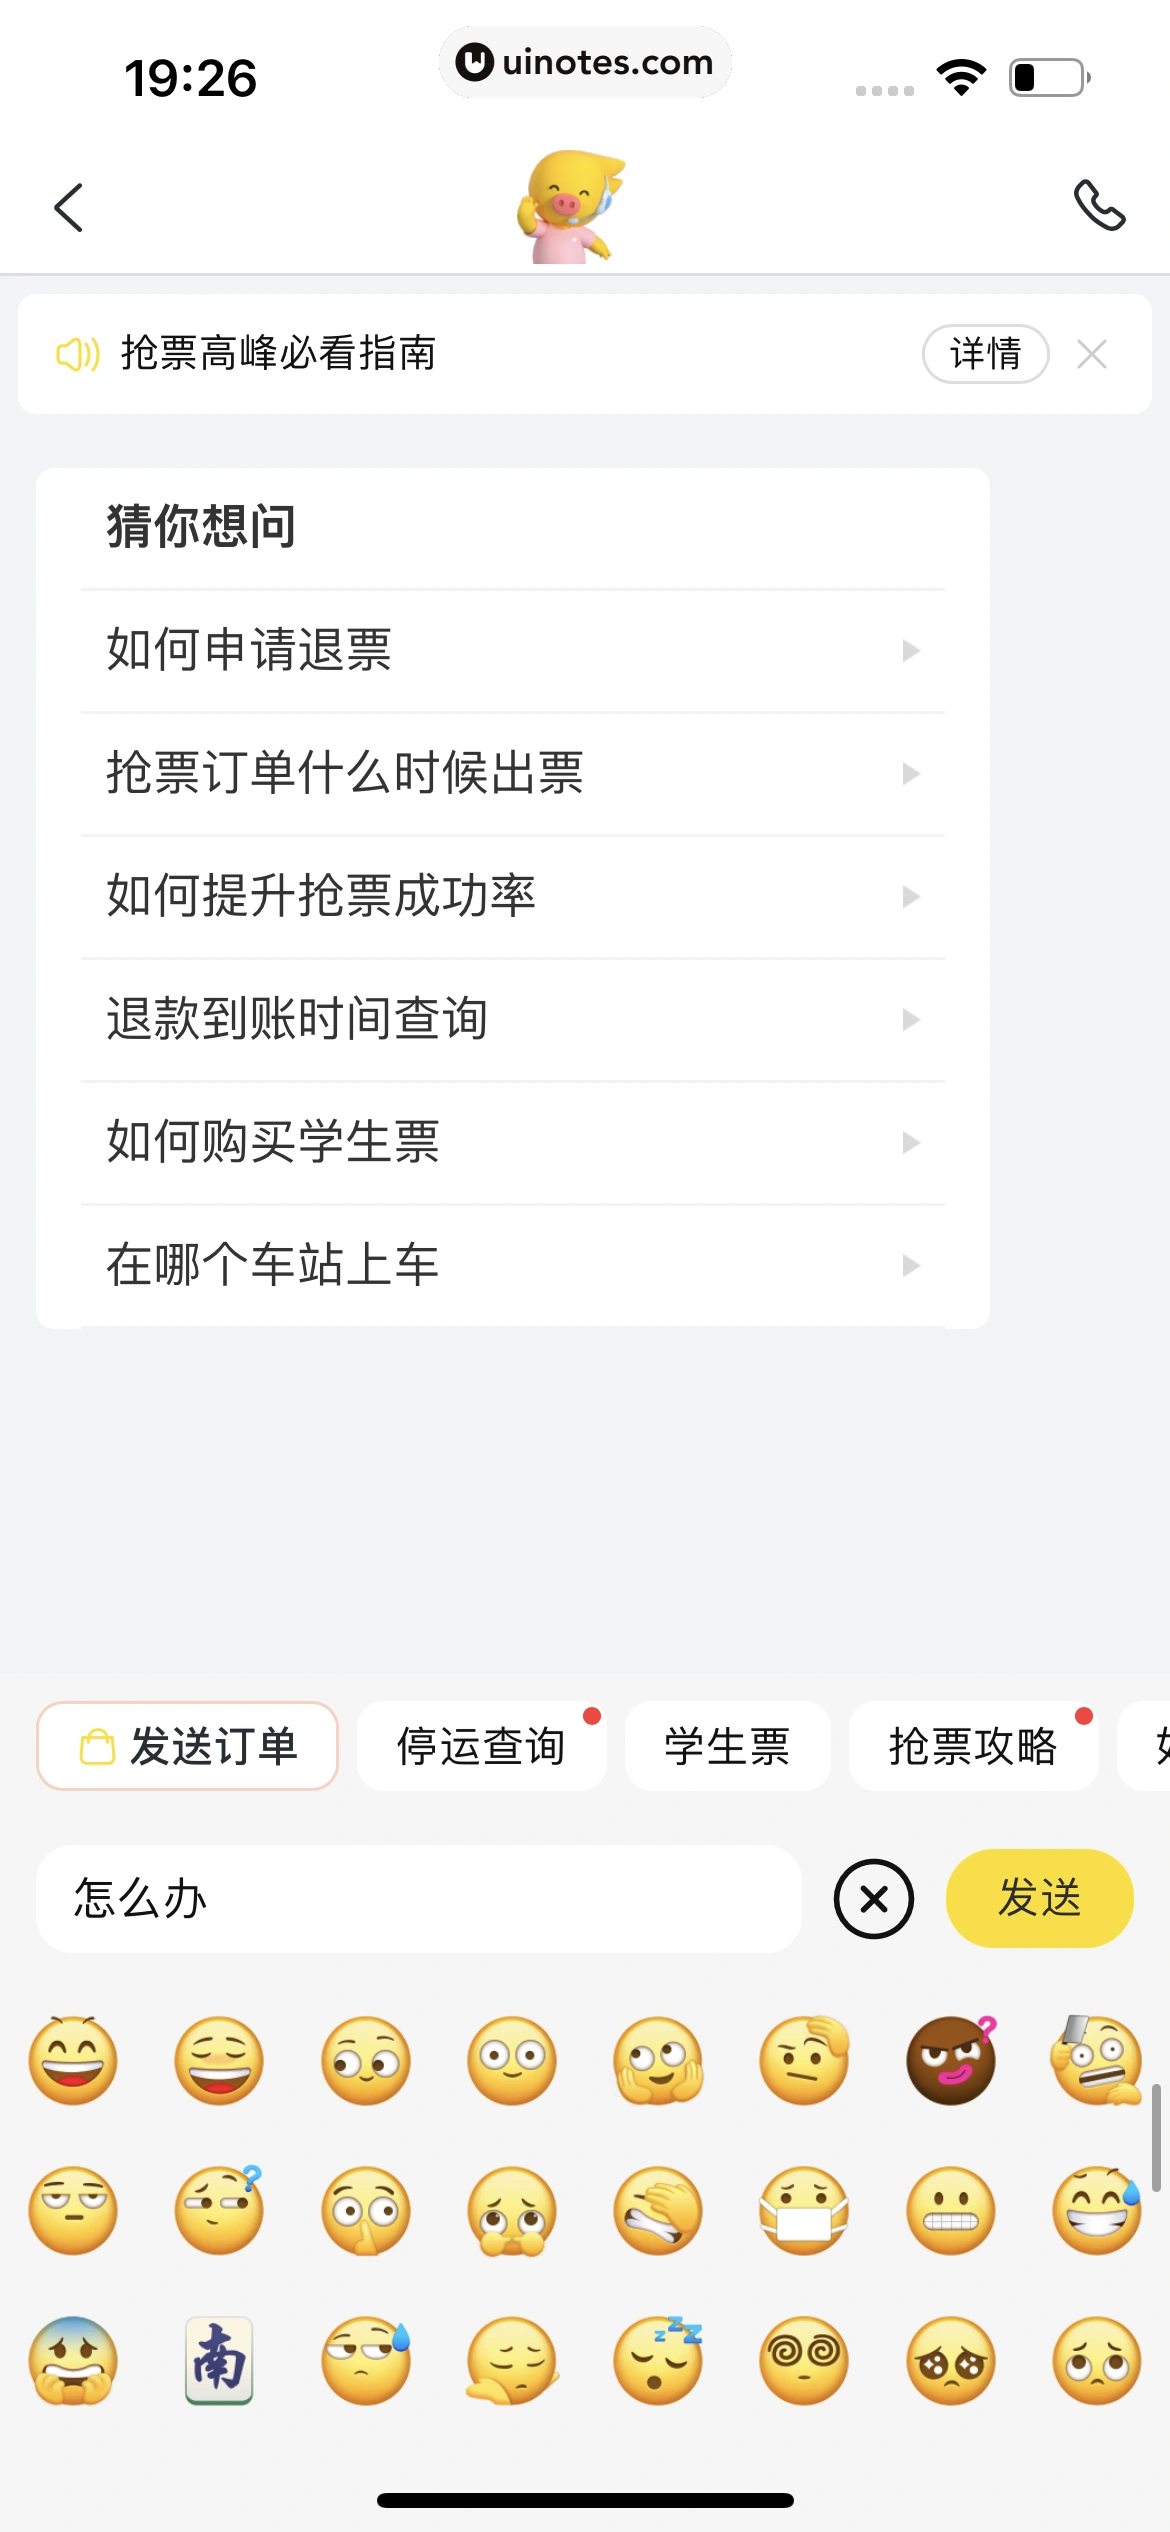 飞猪旅行 App 截图 075 - UI Notes